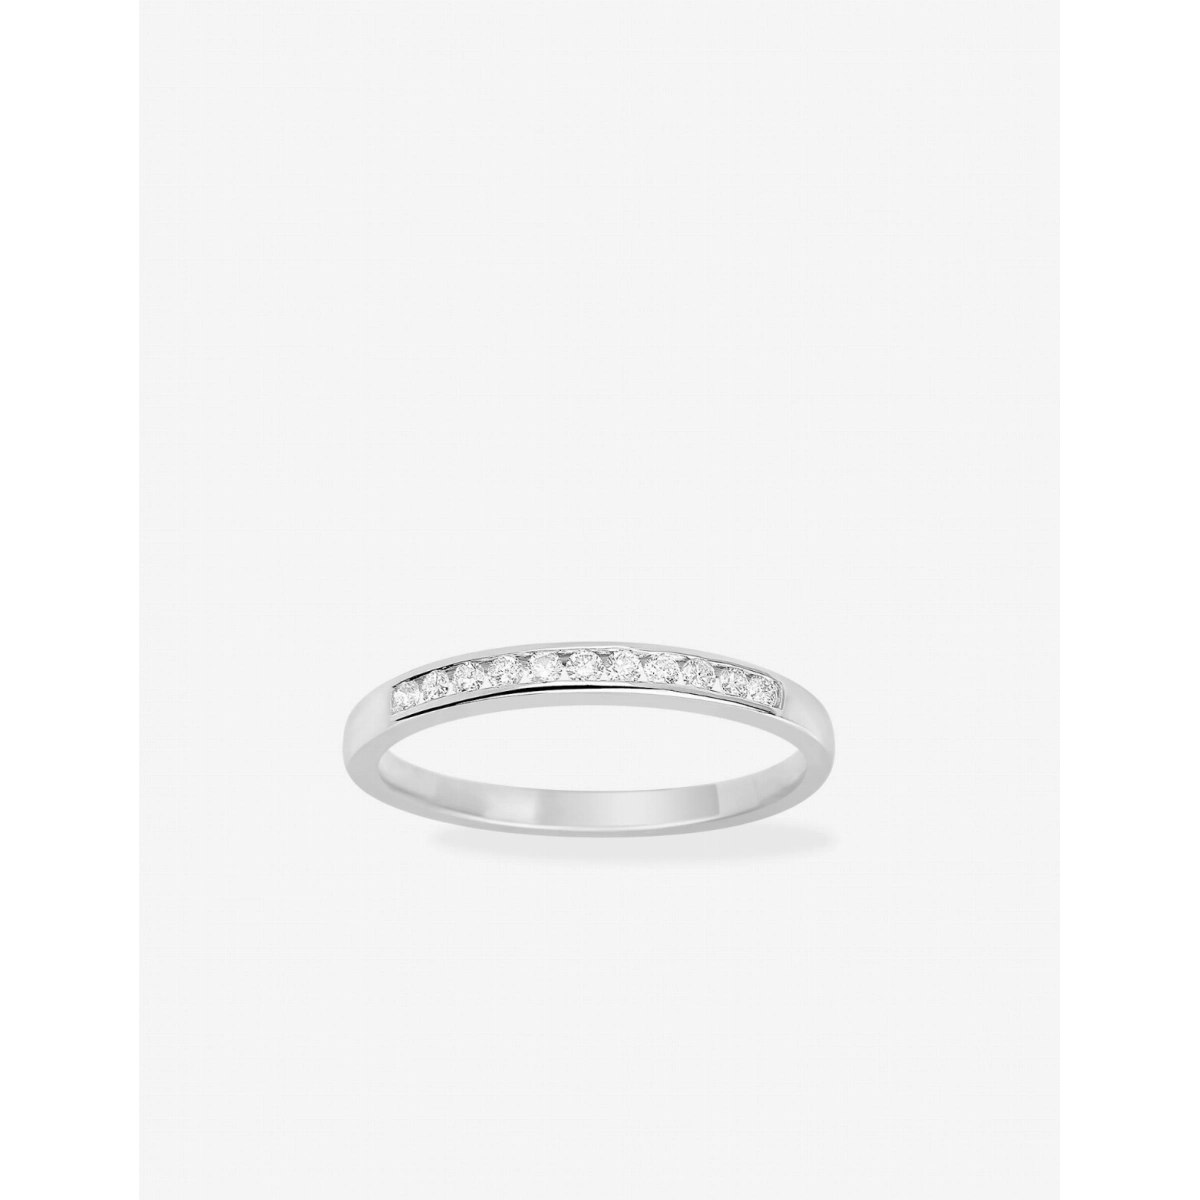 Wedding ring diam 0.15ct GHSI 18K WG Lua Blanca  2.4939.00 - Size 49